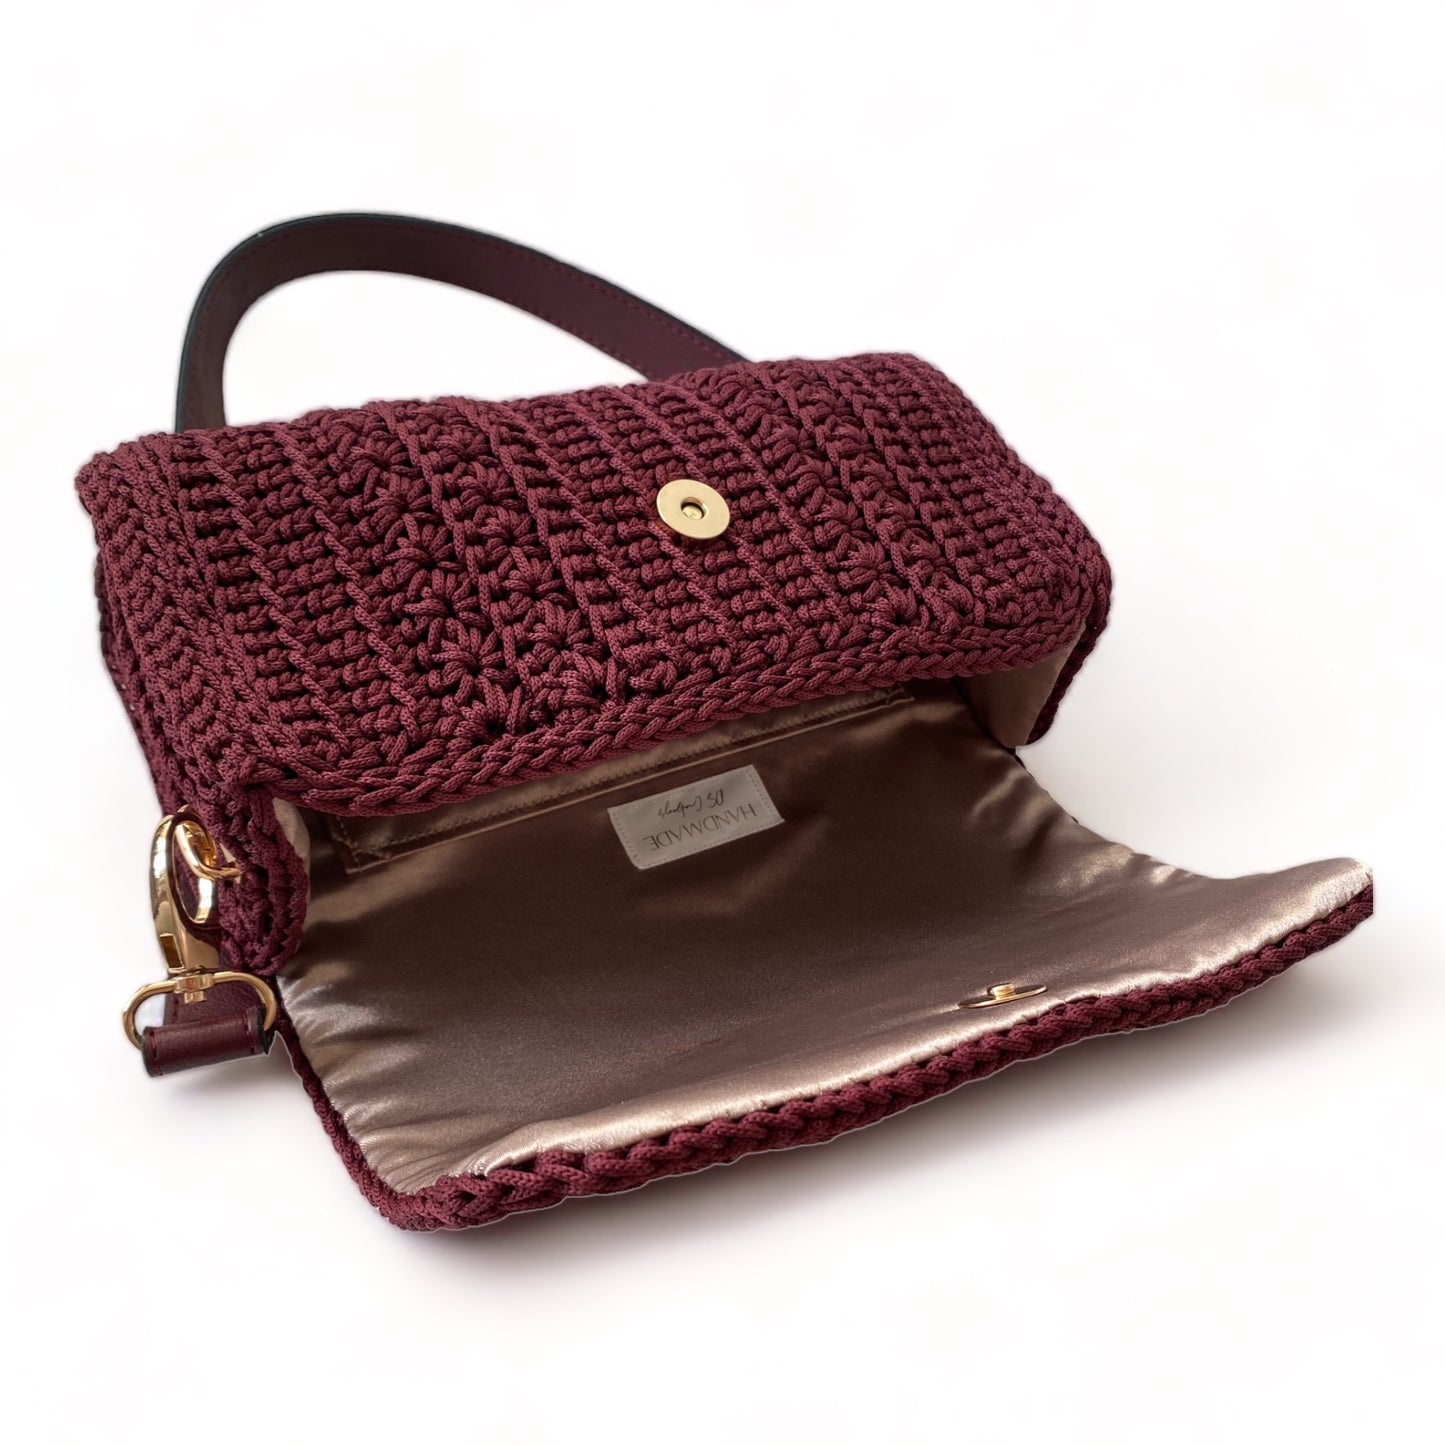 Claudia WS23 shoulder handbag with ECO leather strap